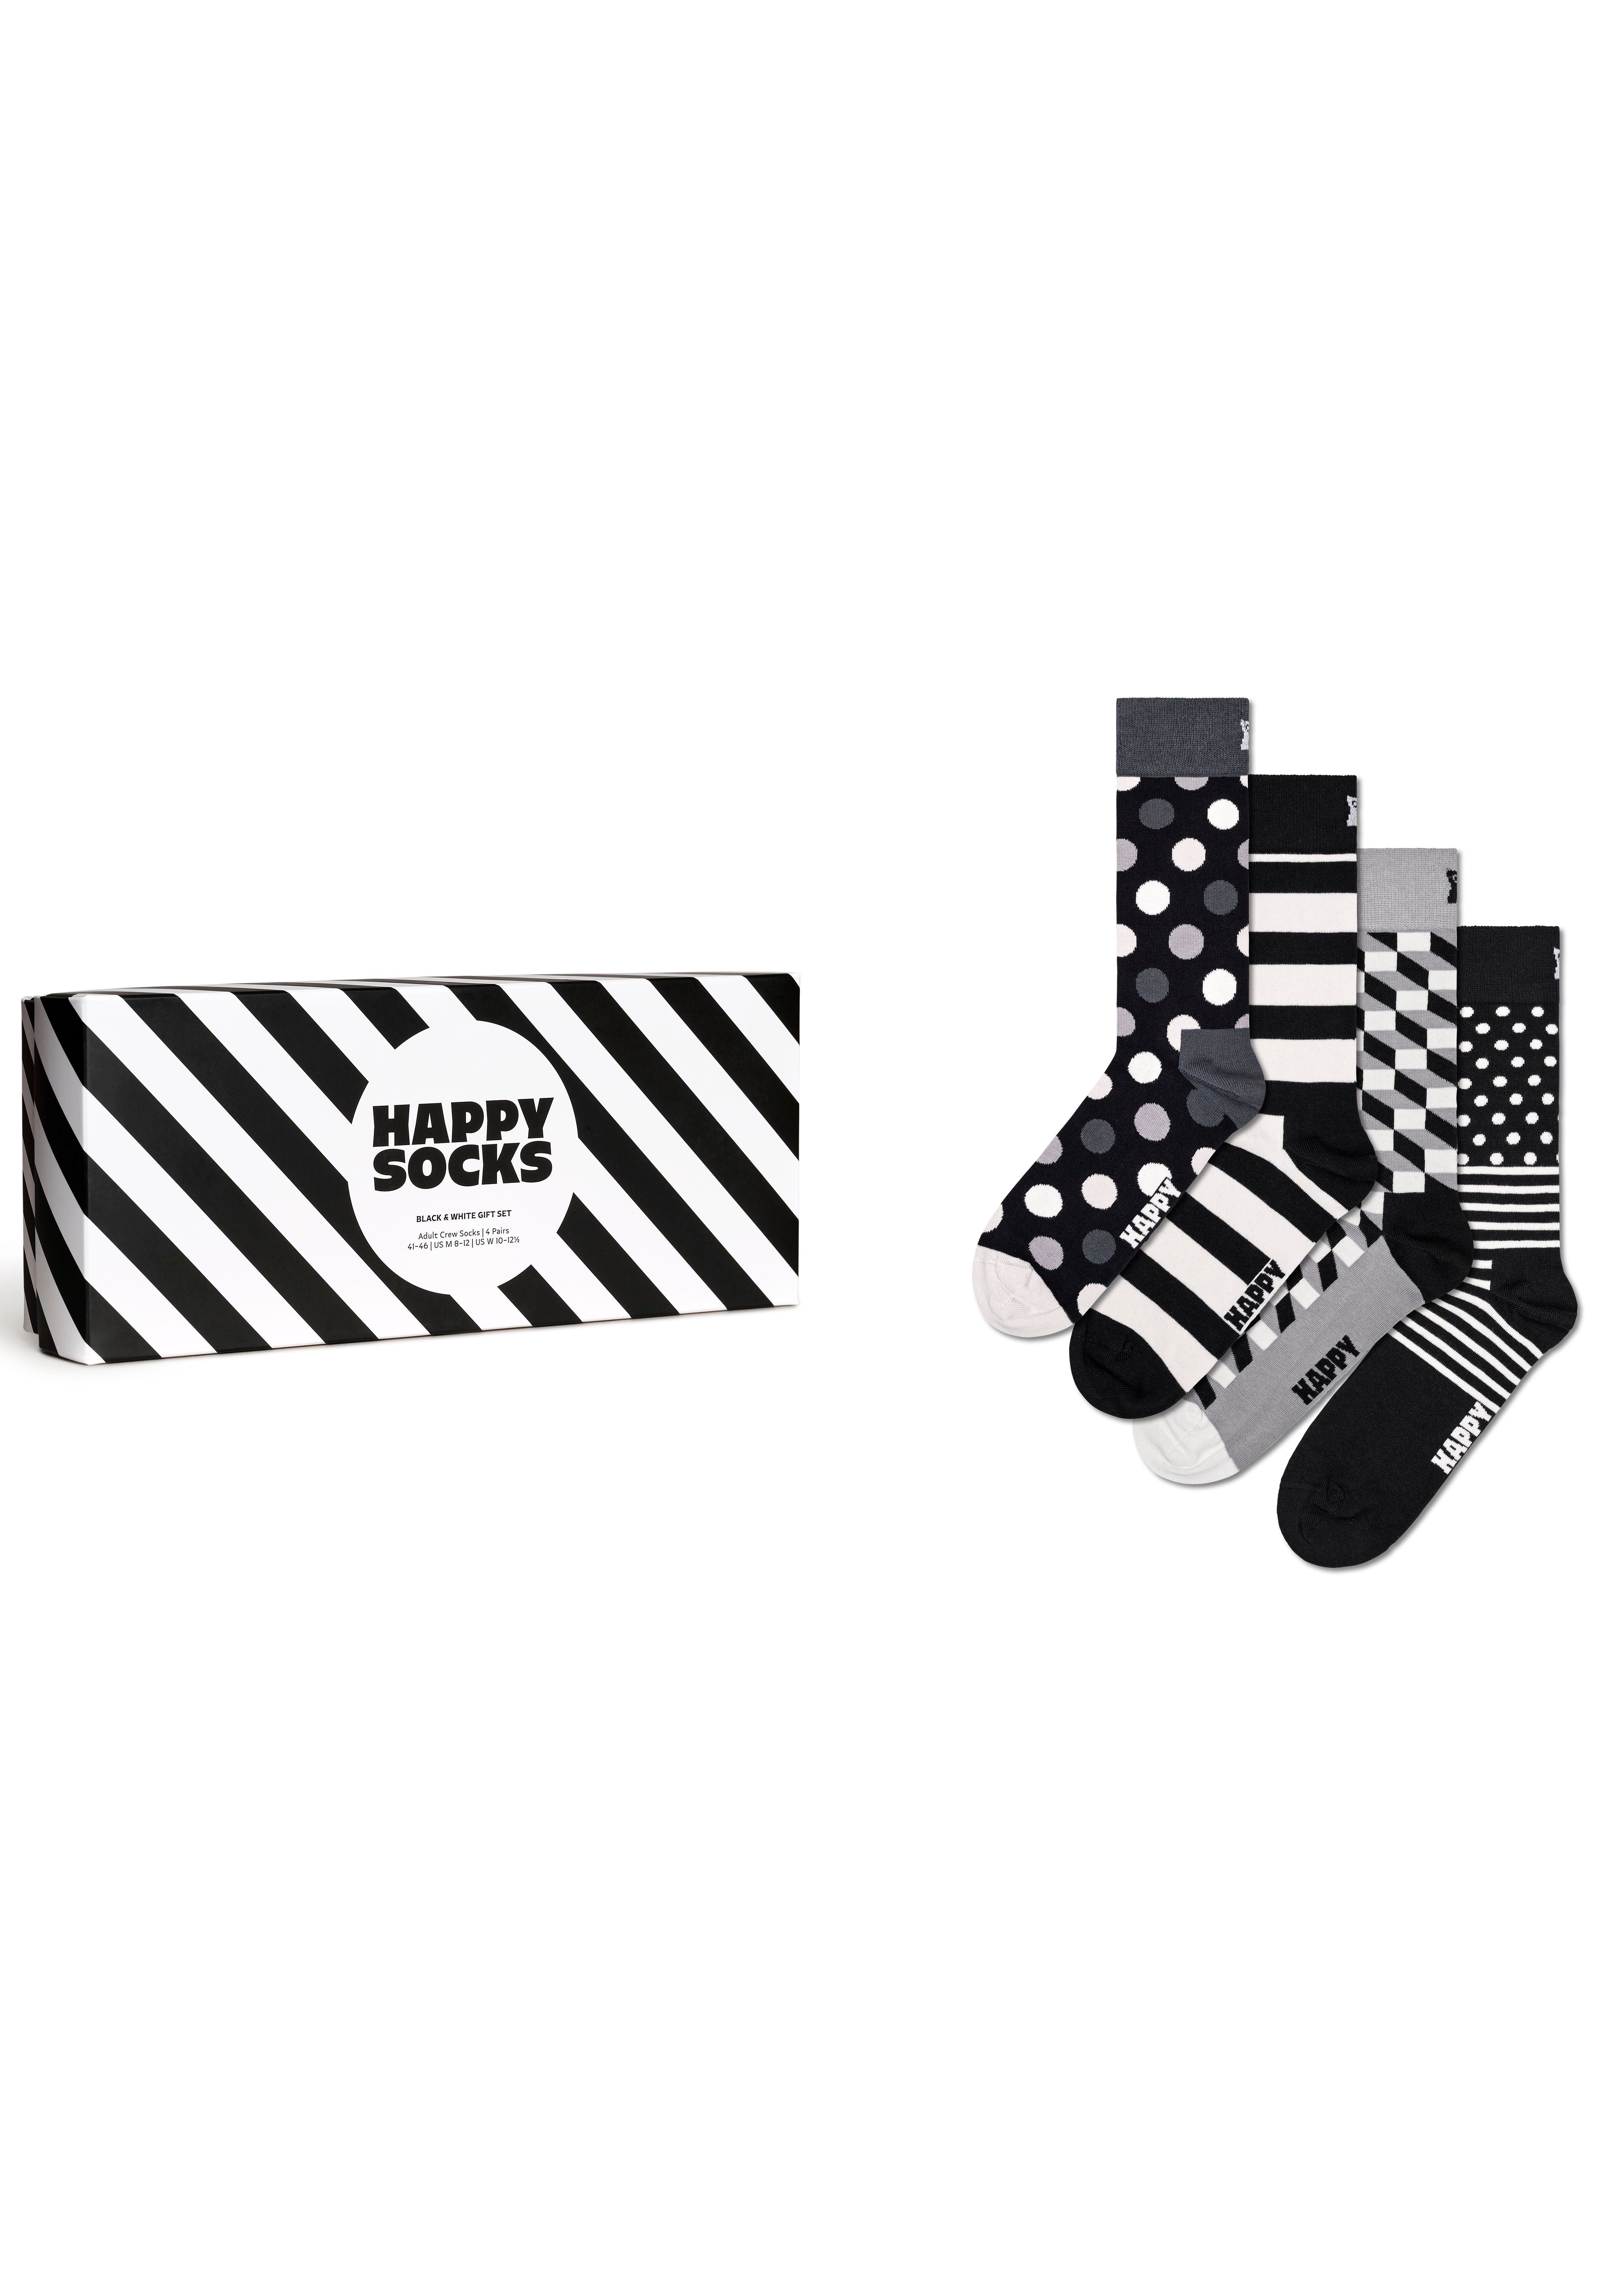 & White Gift Socks 4-Paar) Black (Packung, Socken Set Socks Classic Happy